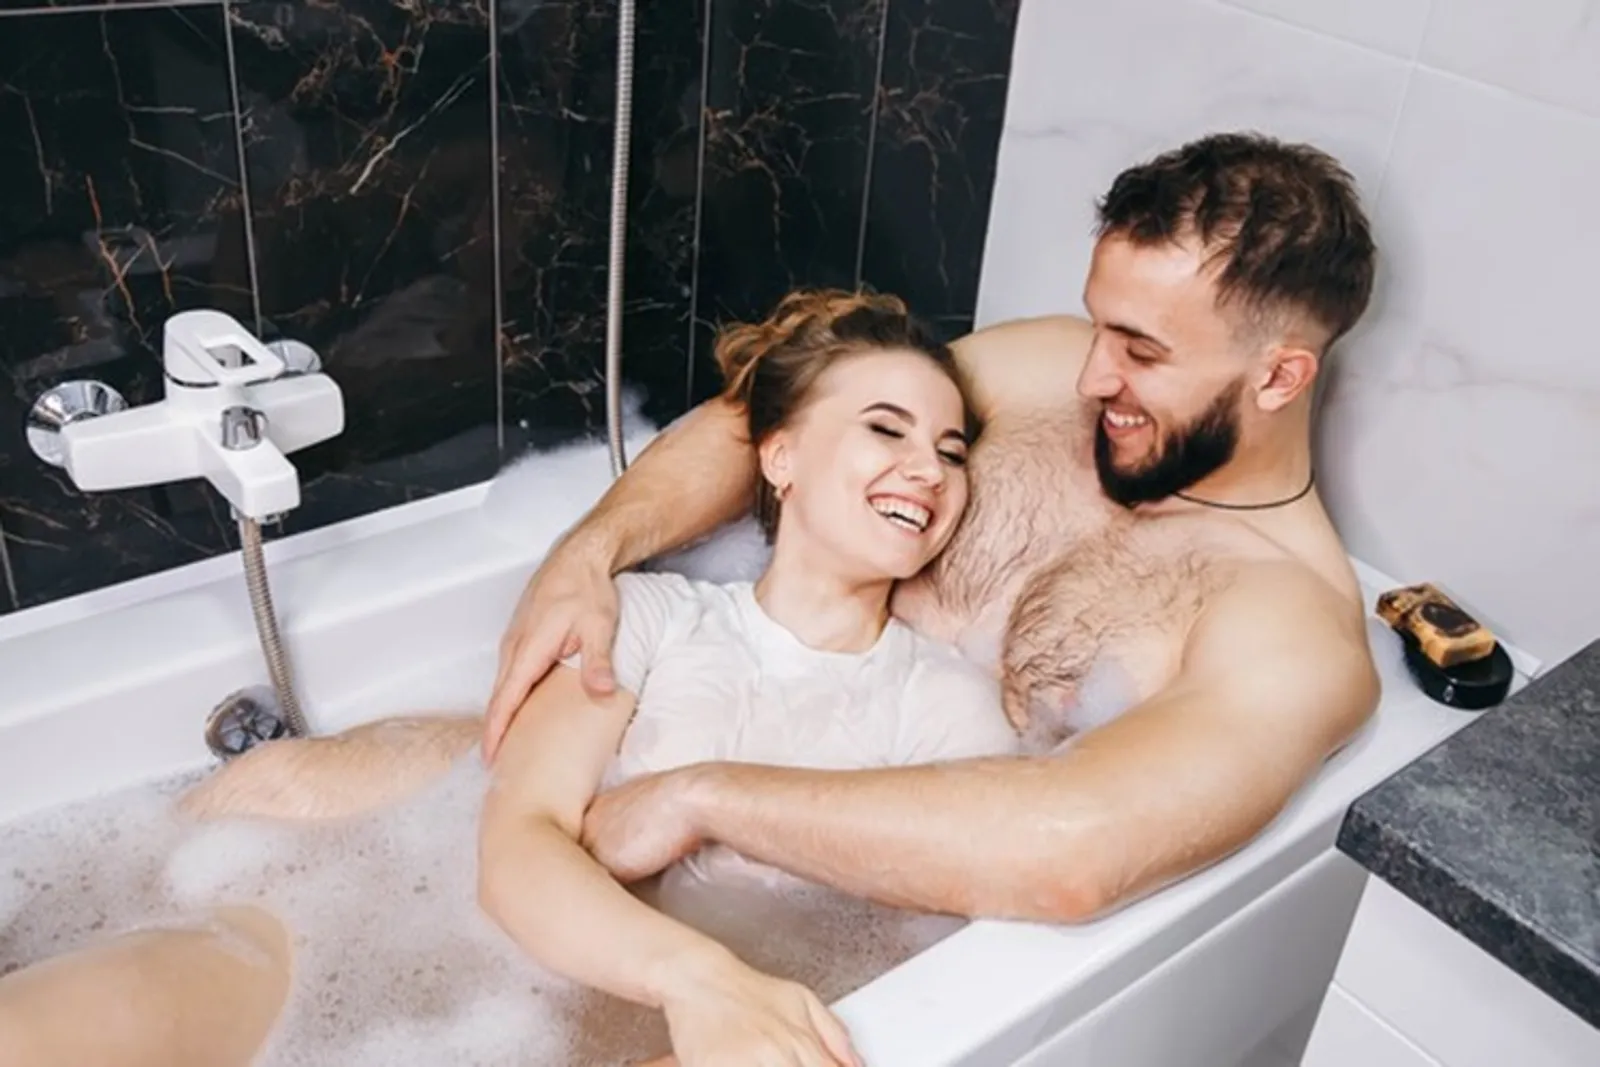 Romantis! 5 Cara Berhubungan Seks di Bathtub Agar Makin Intim